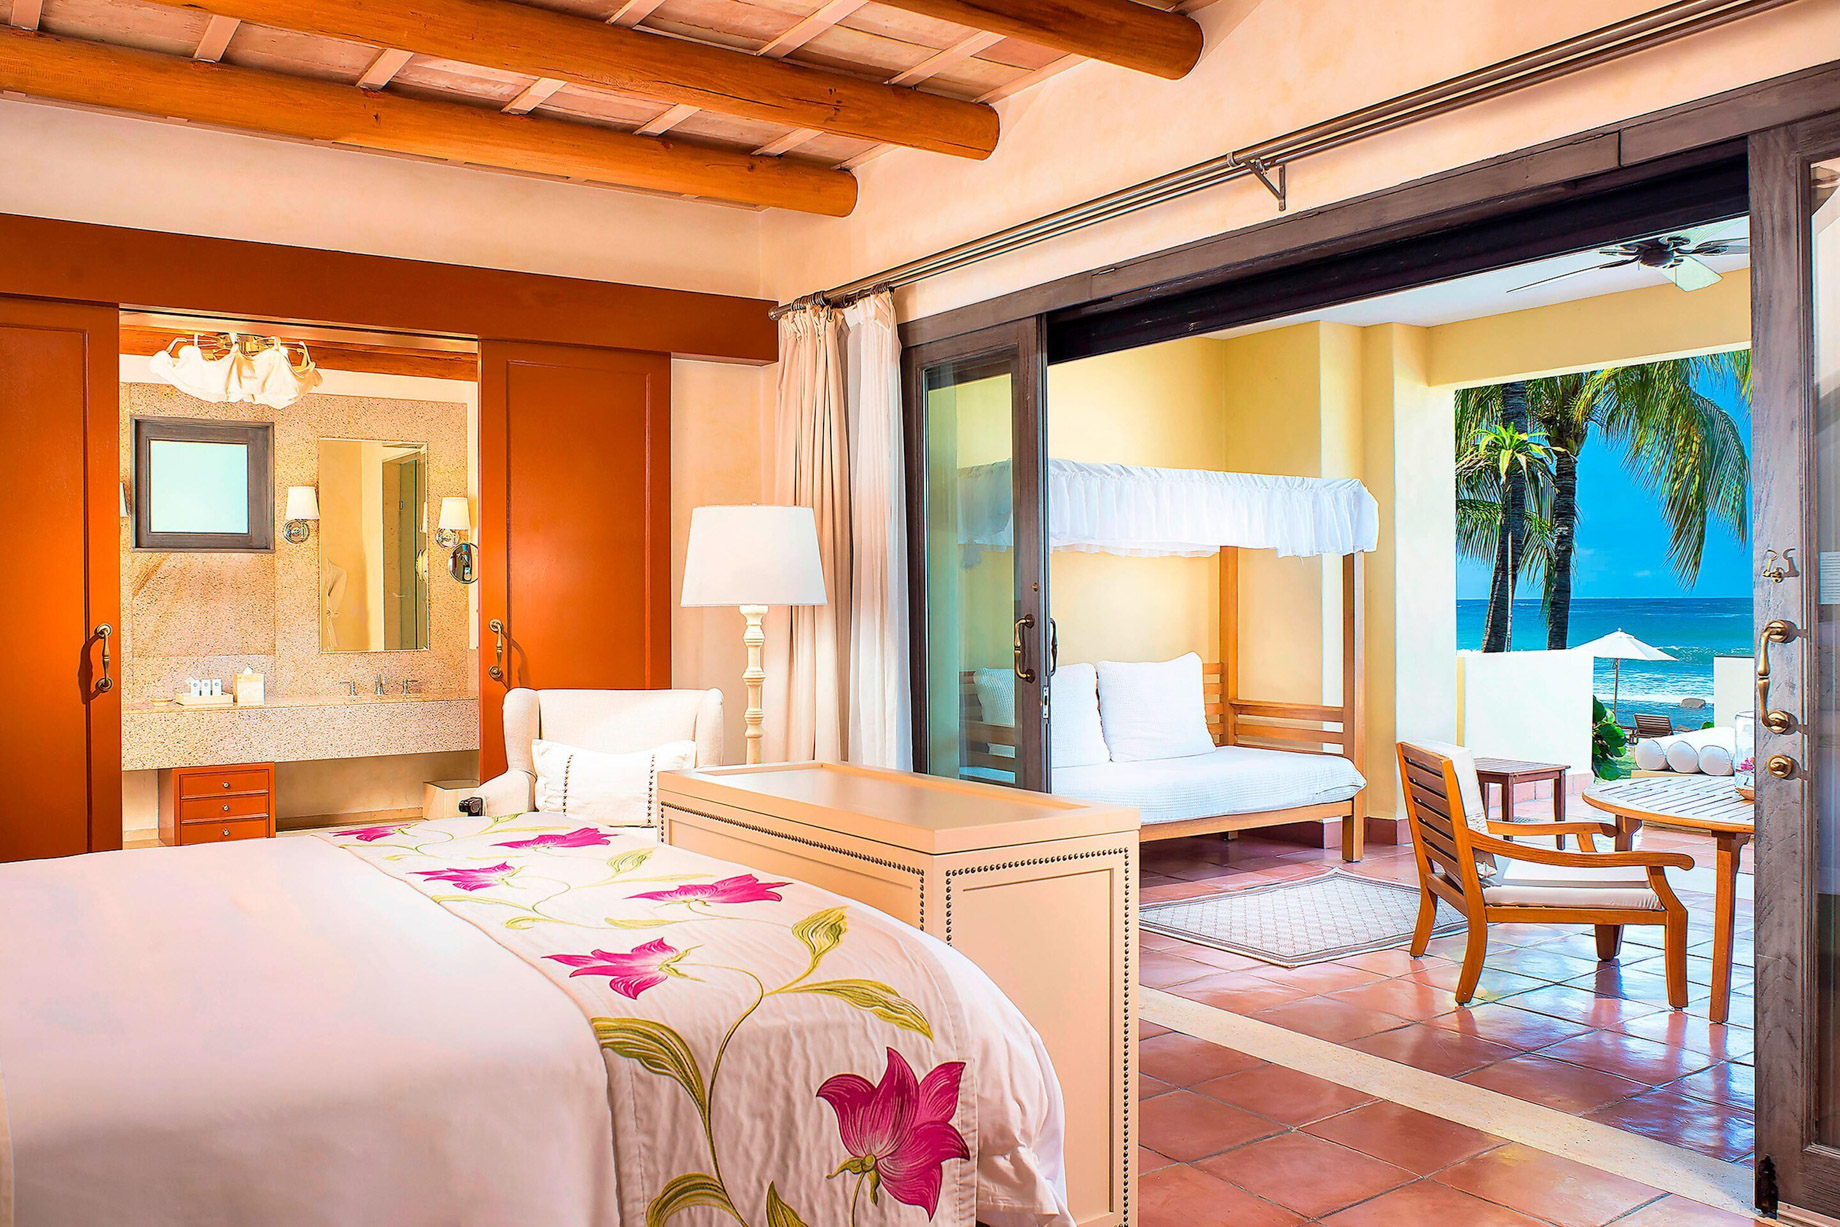 The St. Regis Punta Mita Resort - Nayarit, Mexico - Presidential Villa Master Bedroom